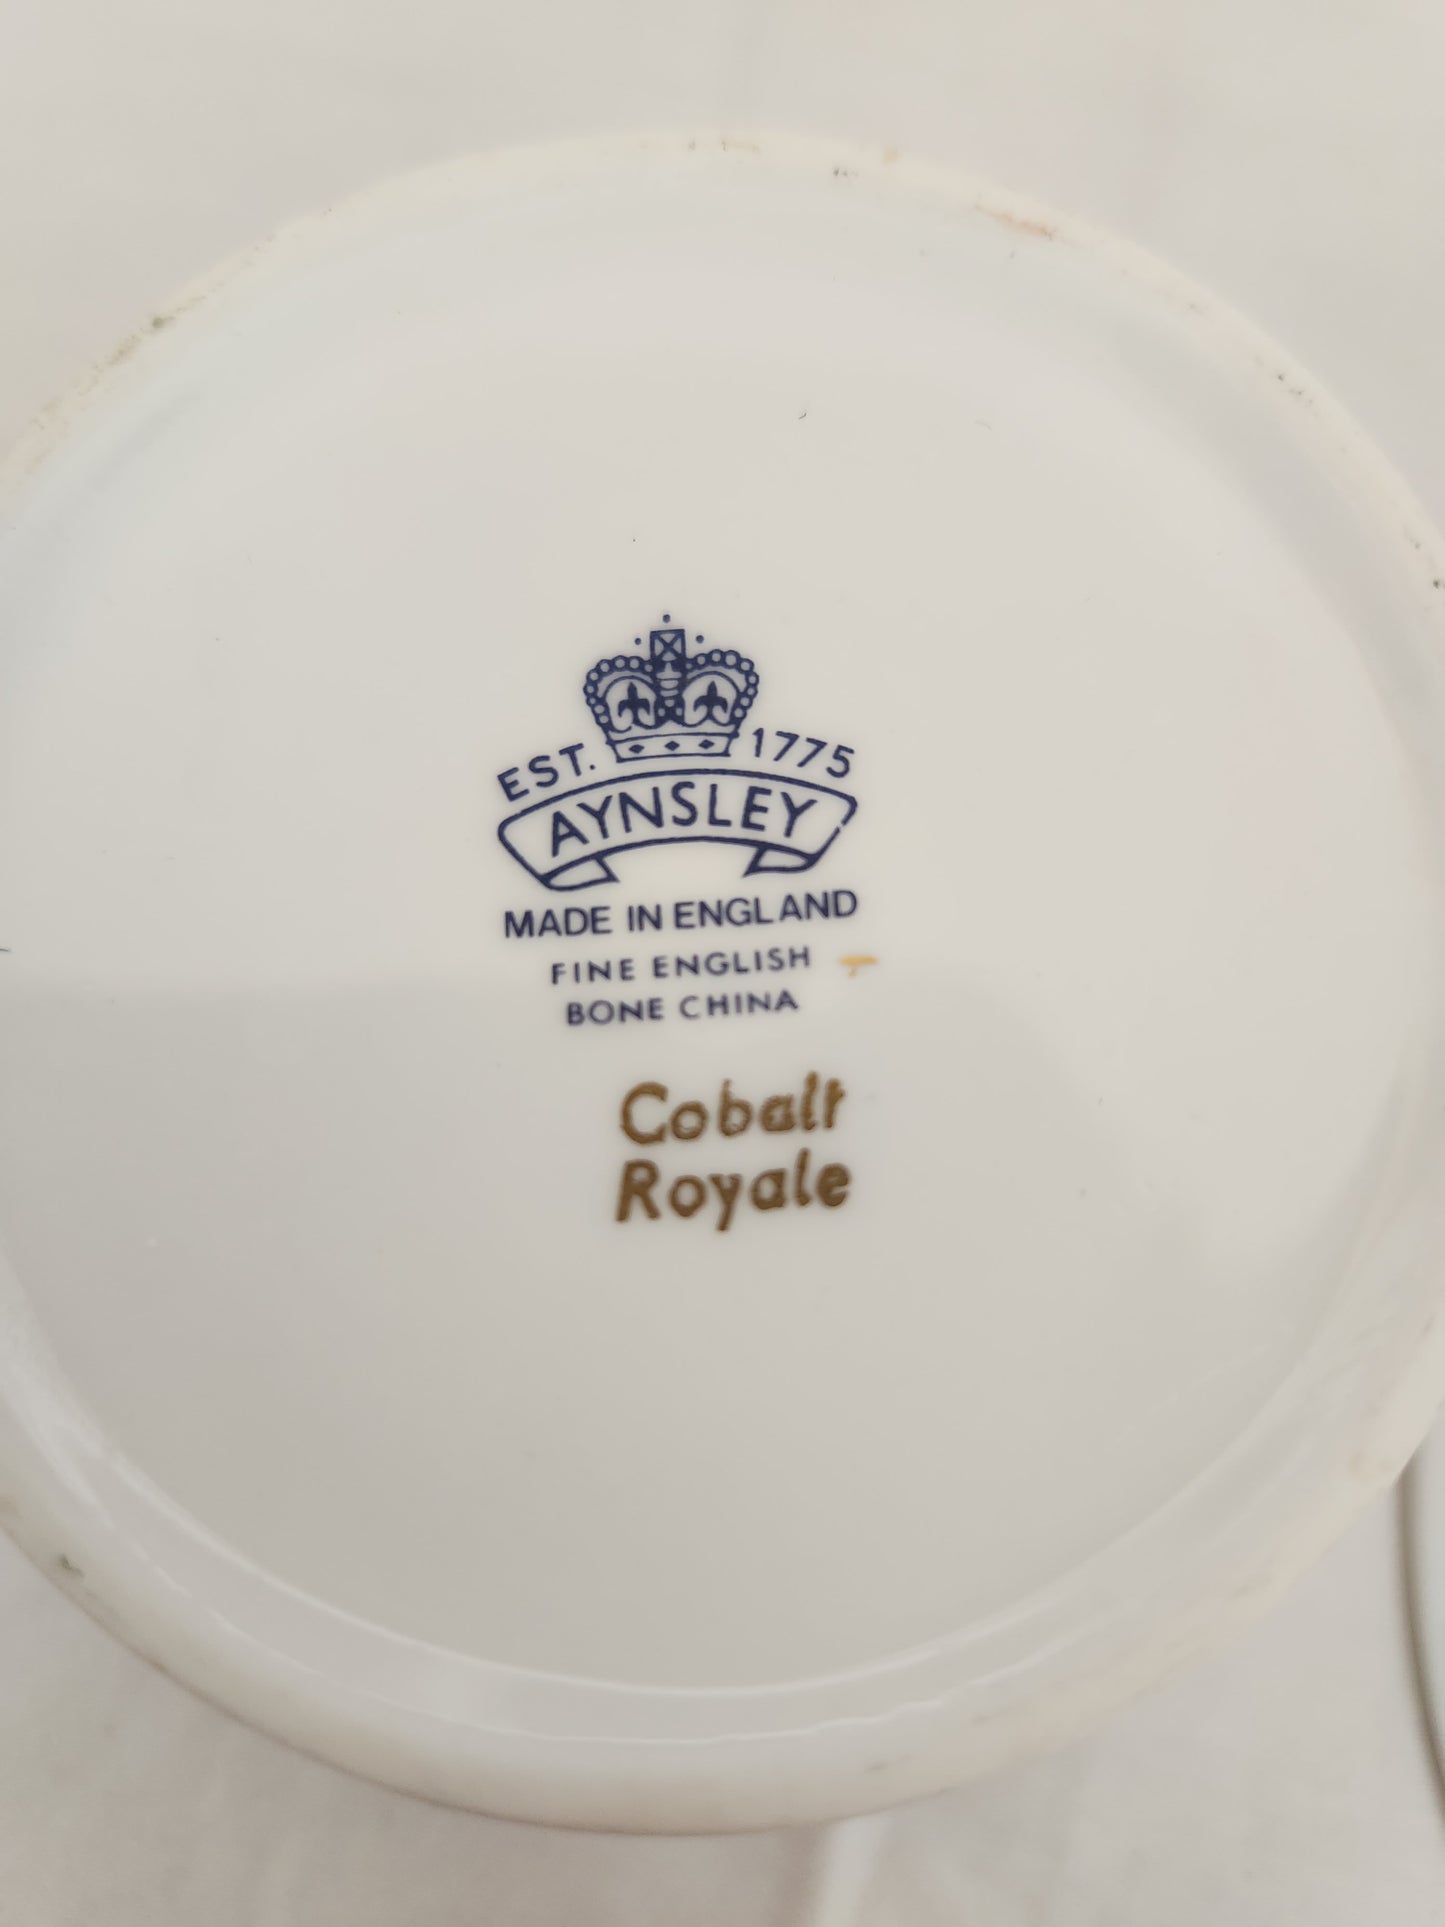 Ansley Cobalt Royale Bone China 2-3/8" Flat Cup & Saucer Set - blue back stamp